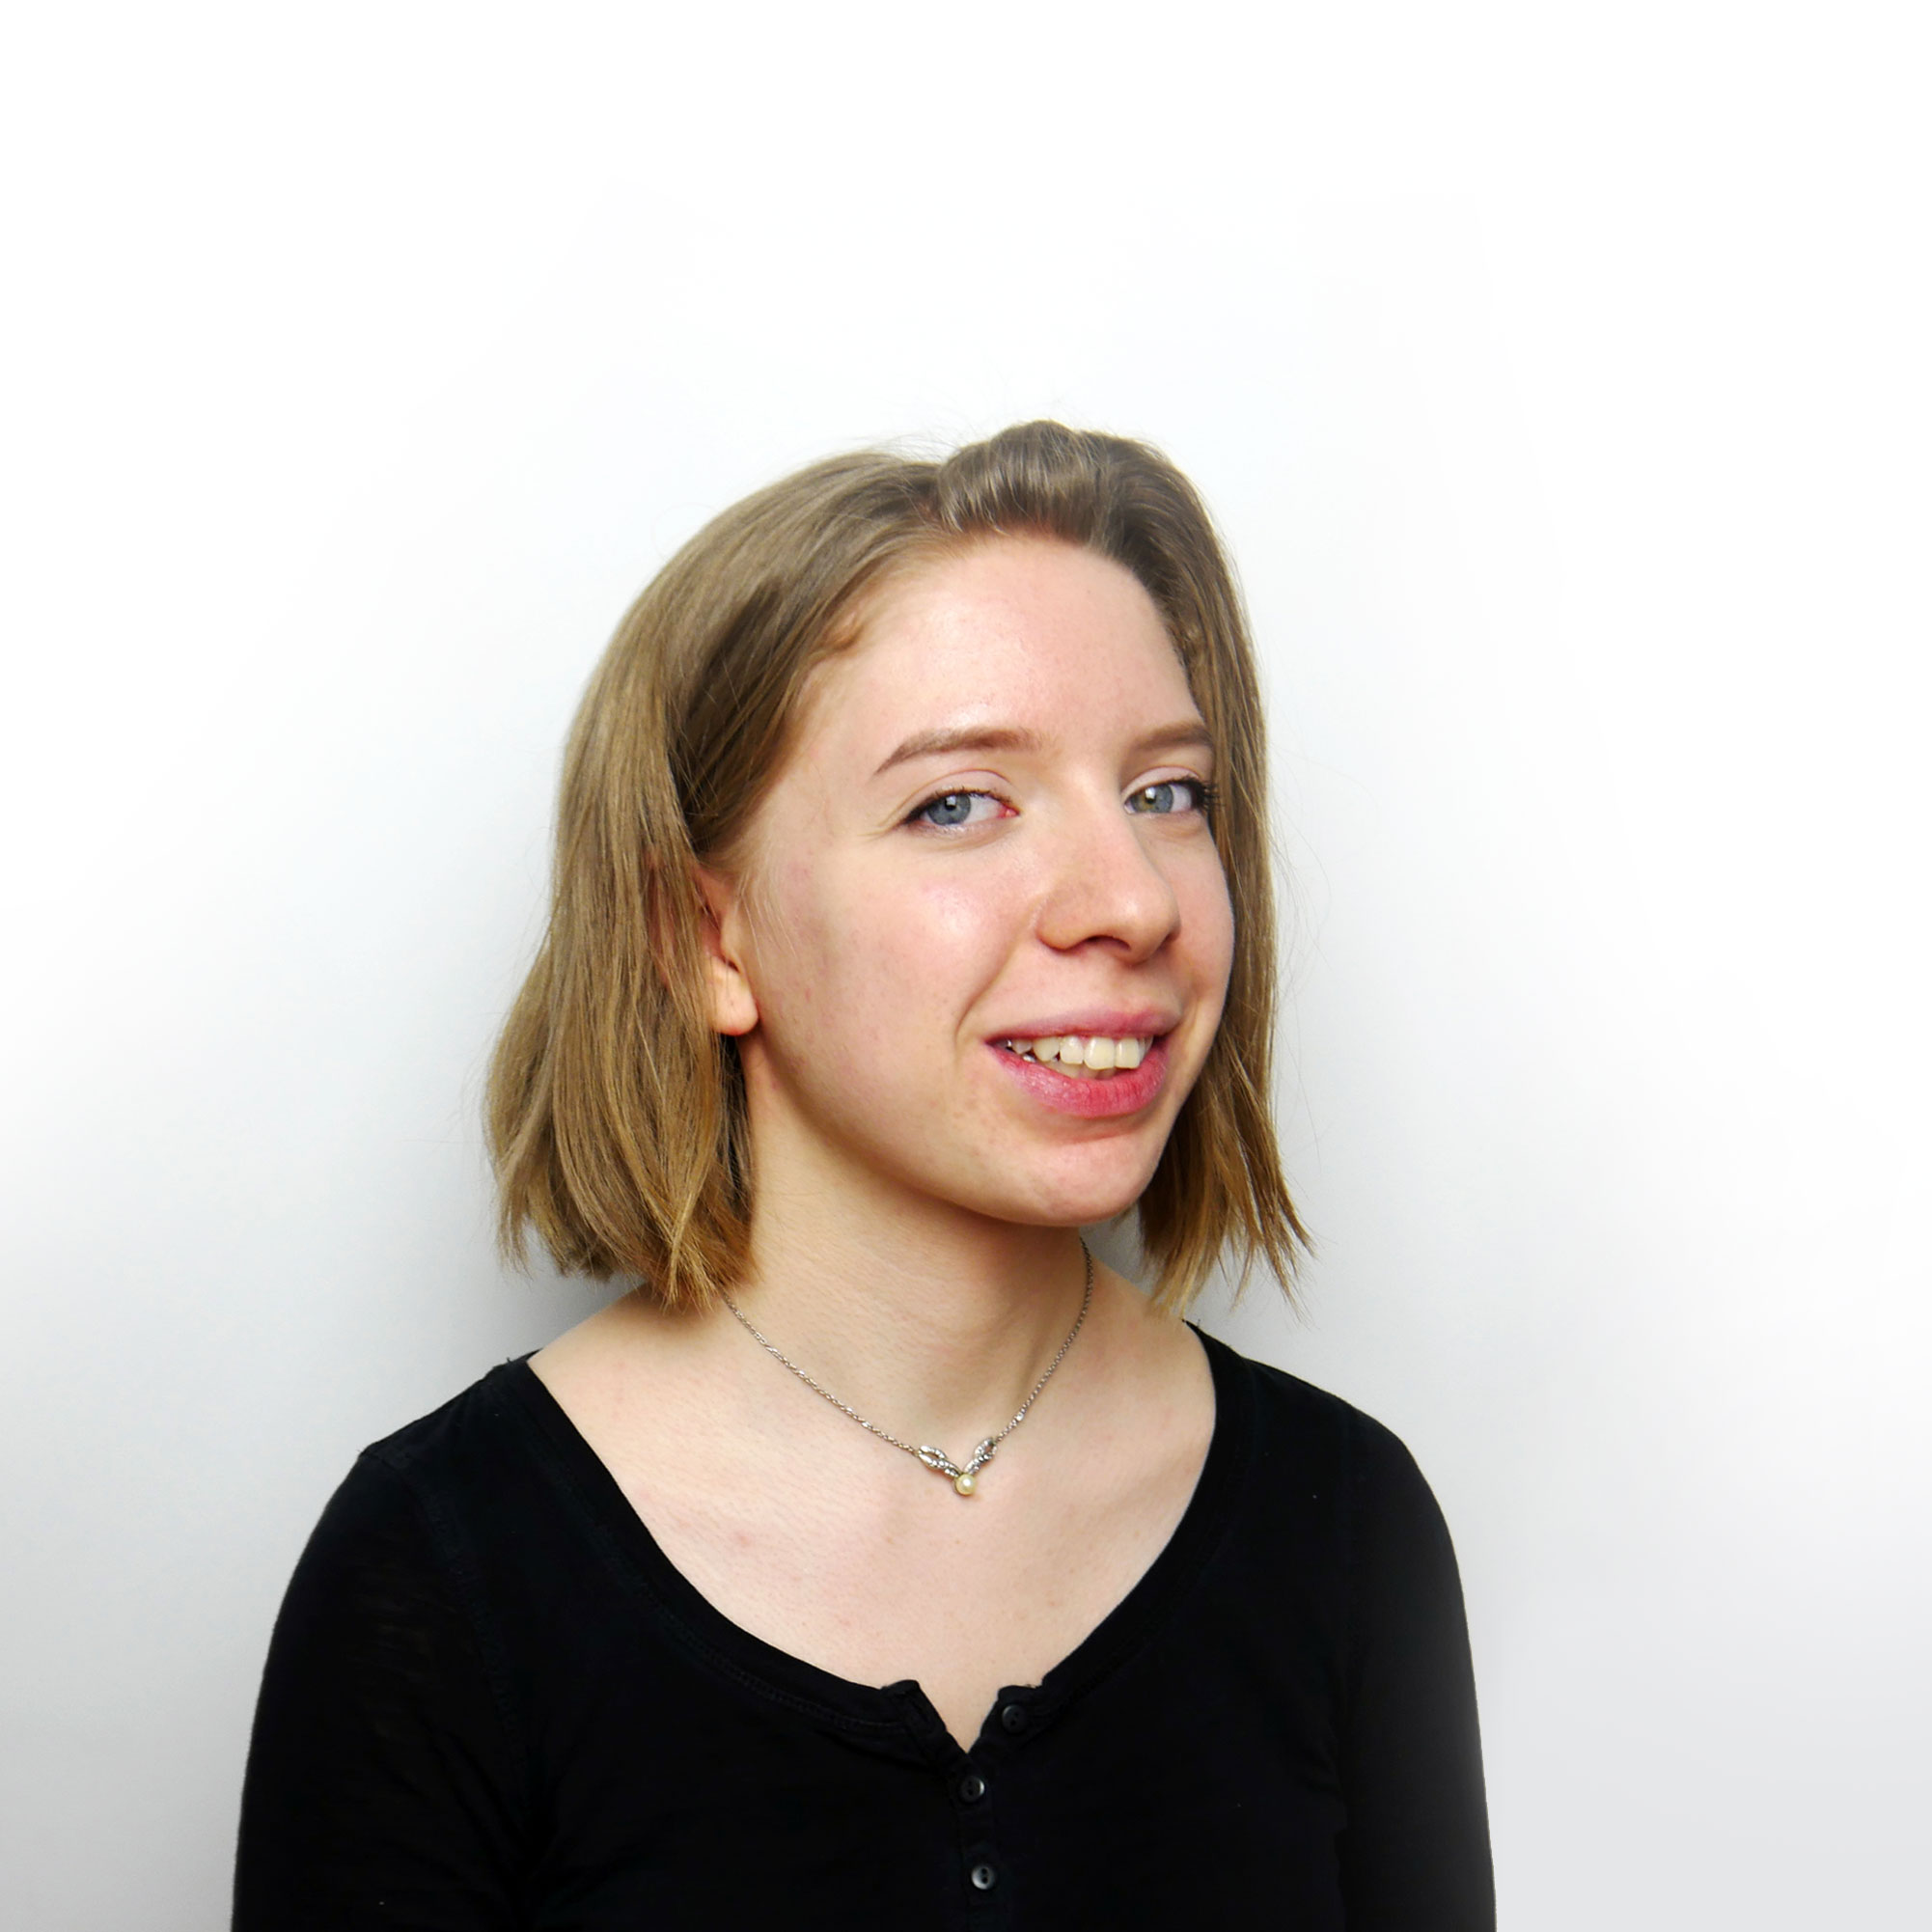 Ein Profilbild von der Mediengestalterin Celina Schunder